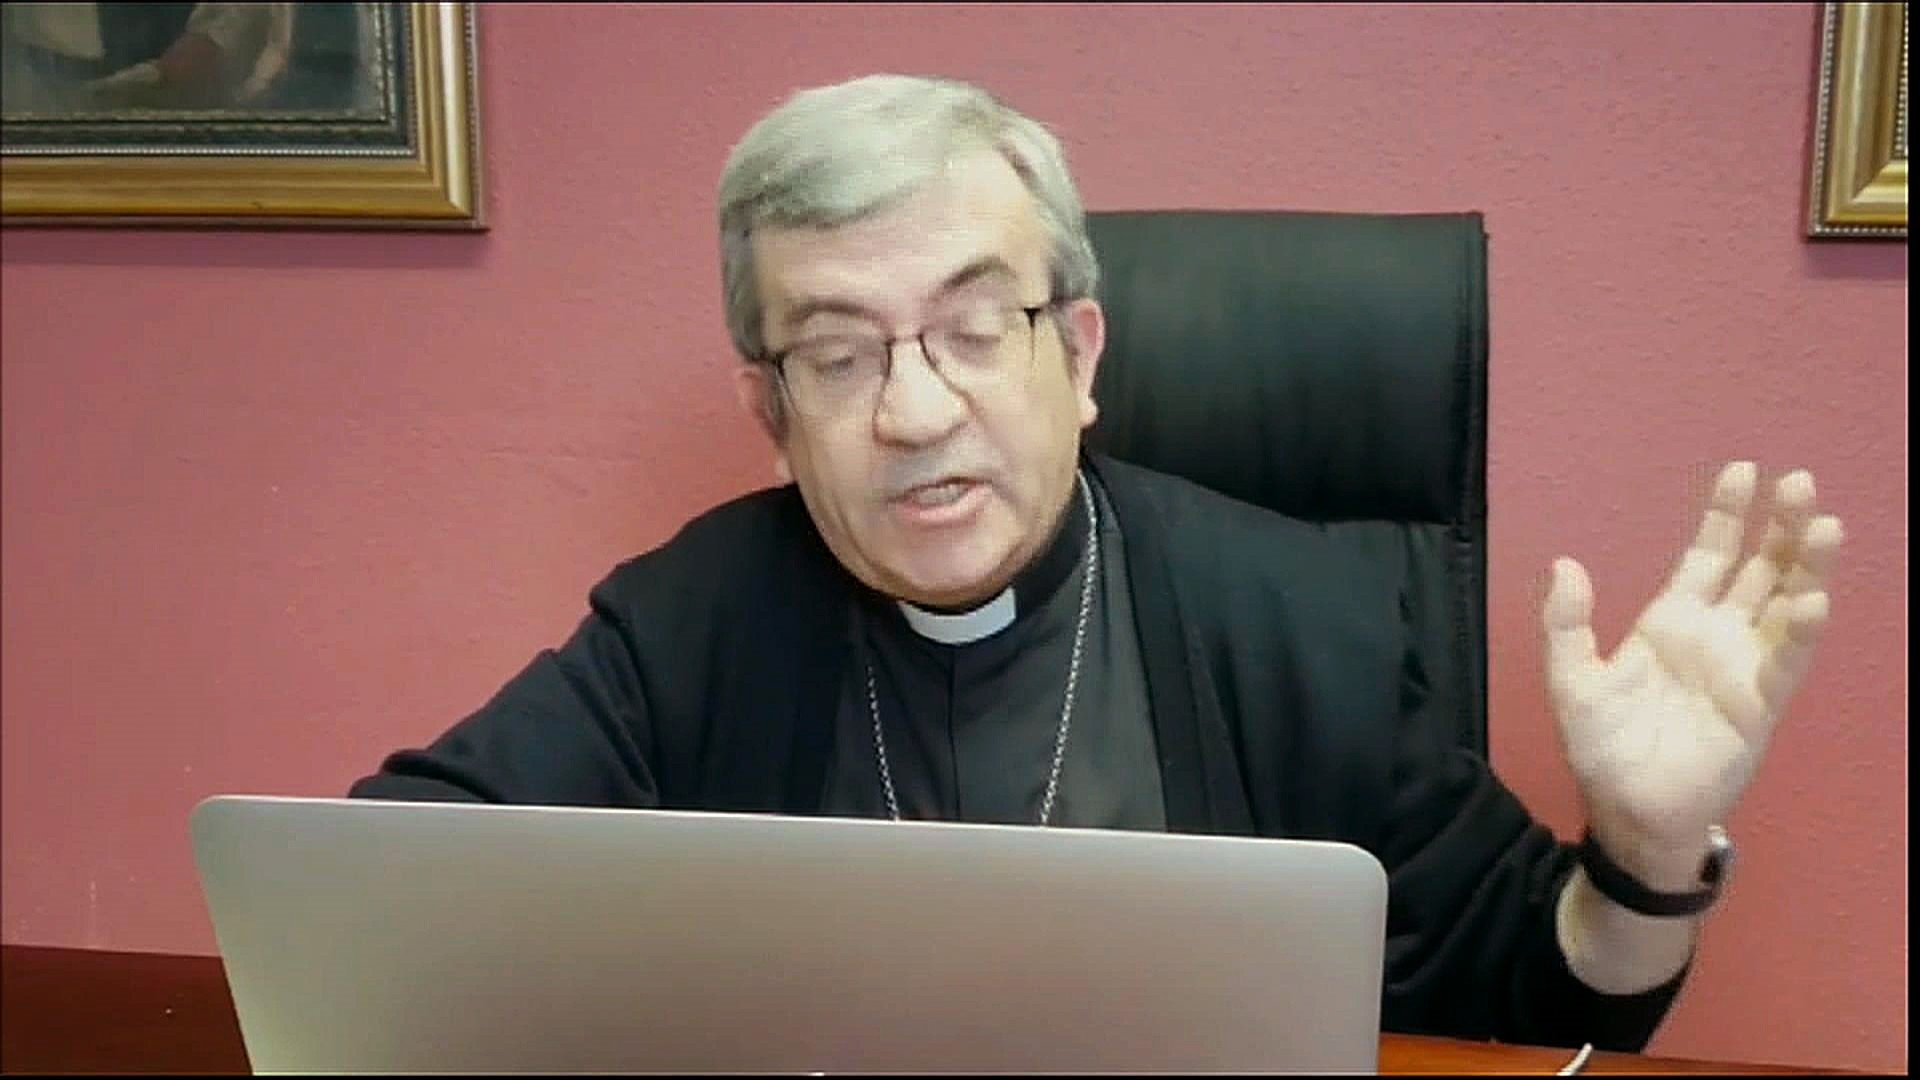 Los obispos españoles, en contra del ingreso mínimo vital que propone Sánchez